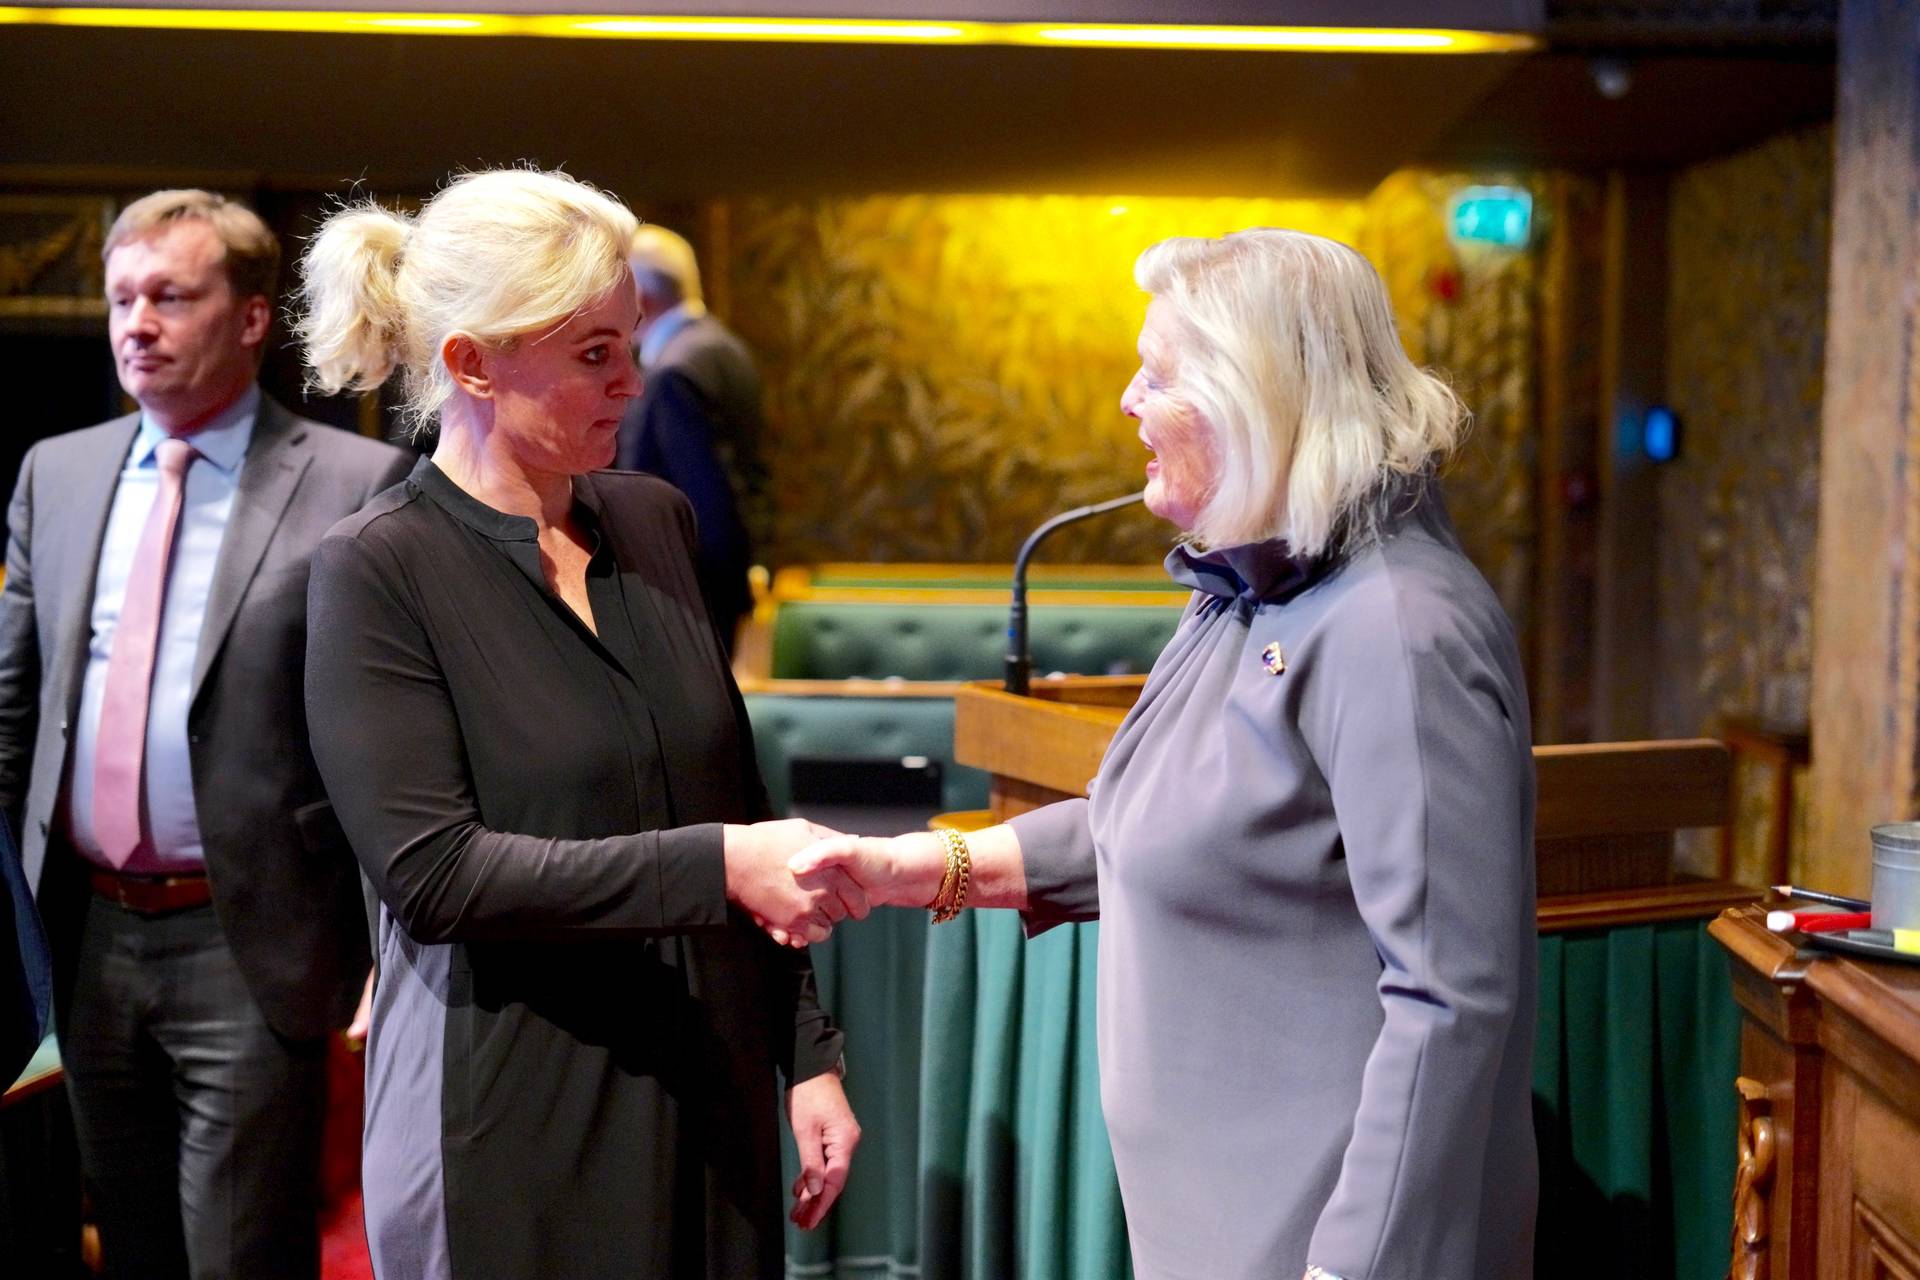 Felicitaties van voorzitter Ankie Broekers-Knol voor Floriske van Leeuwen (PvdD)